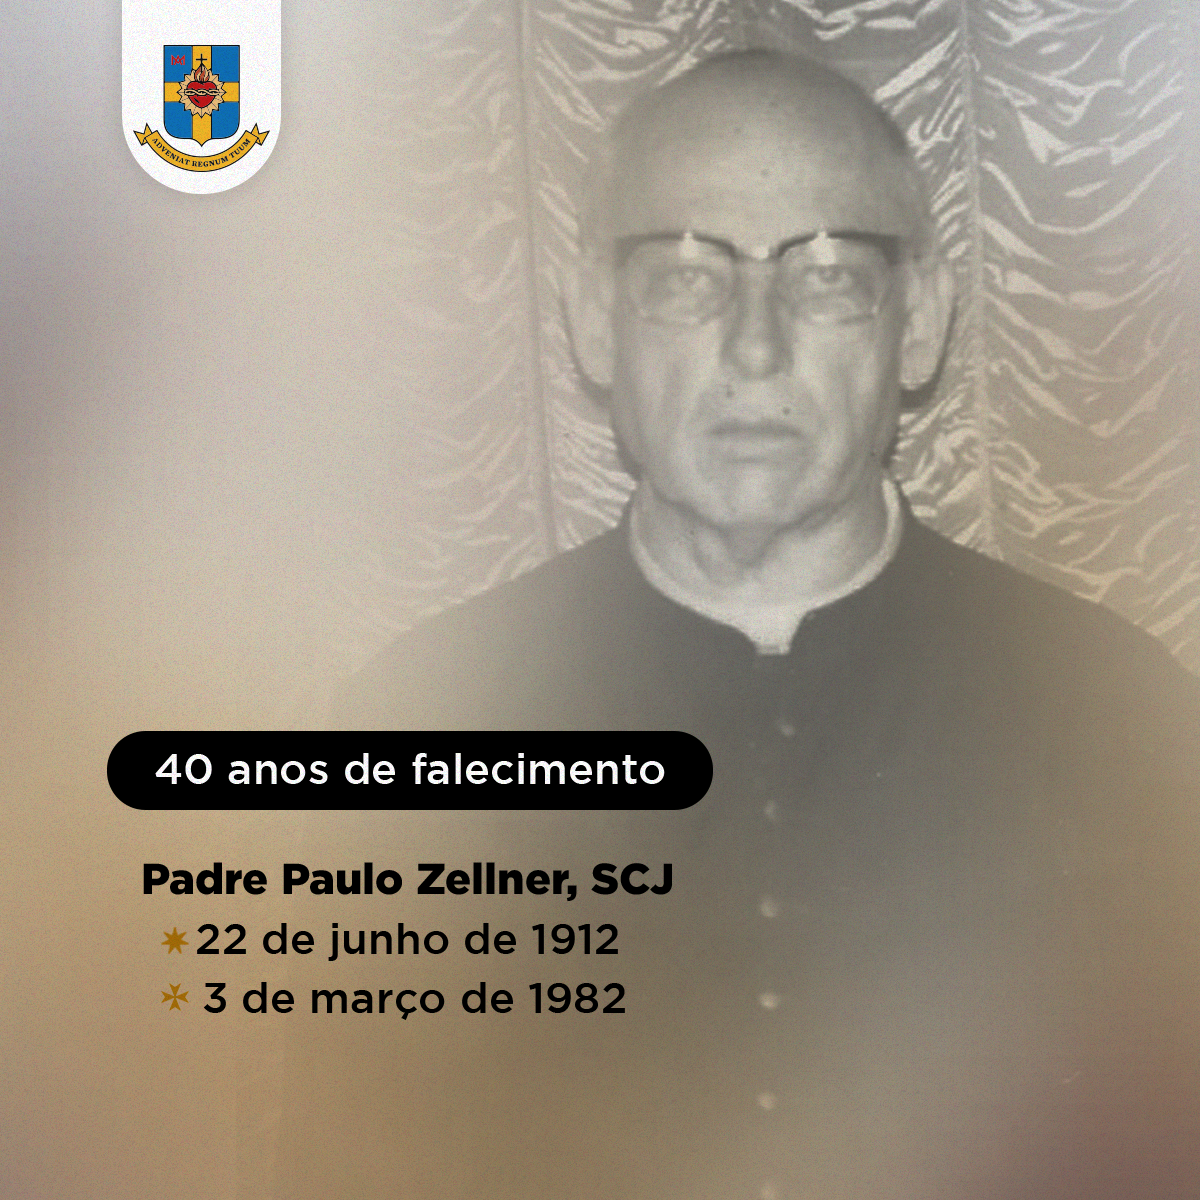 40 anos de falecimento do Padre Paulo Zellner, SCJ.